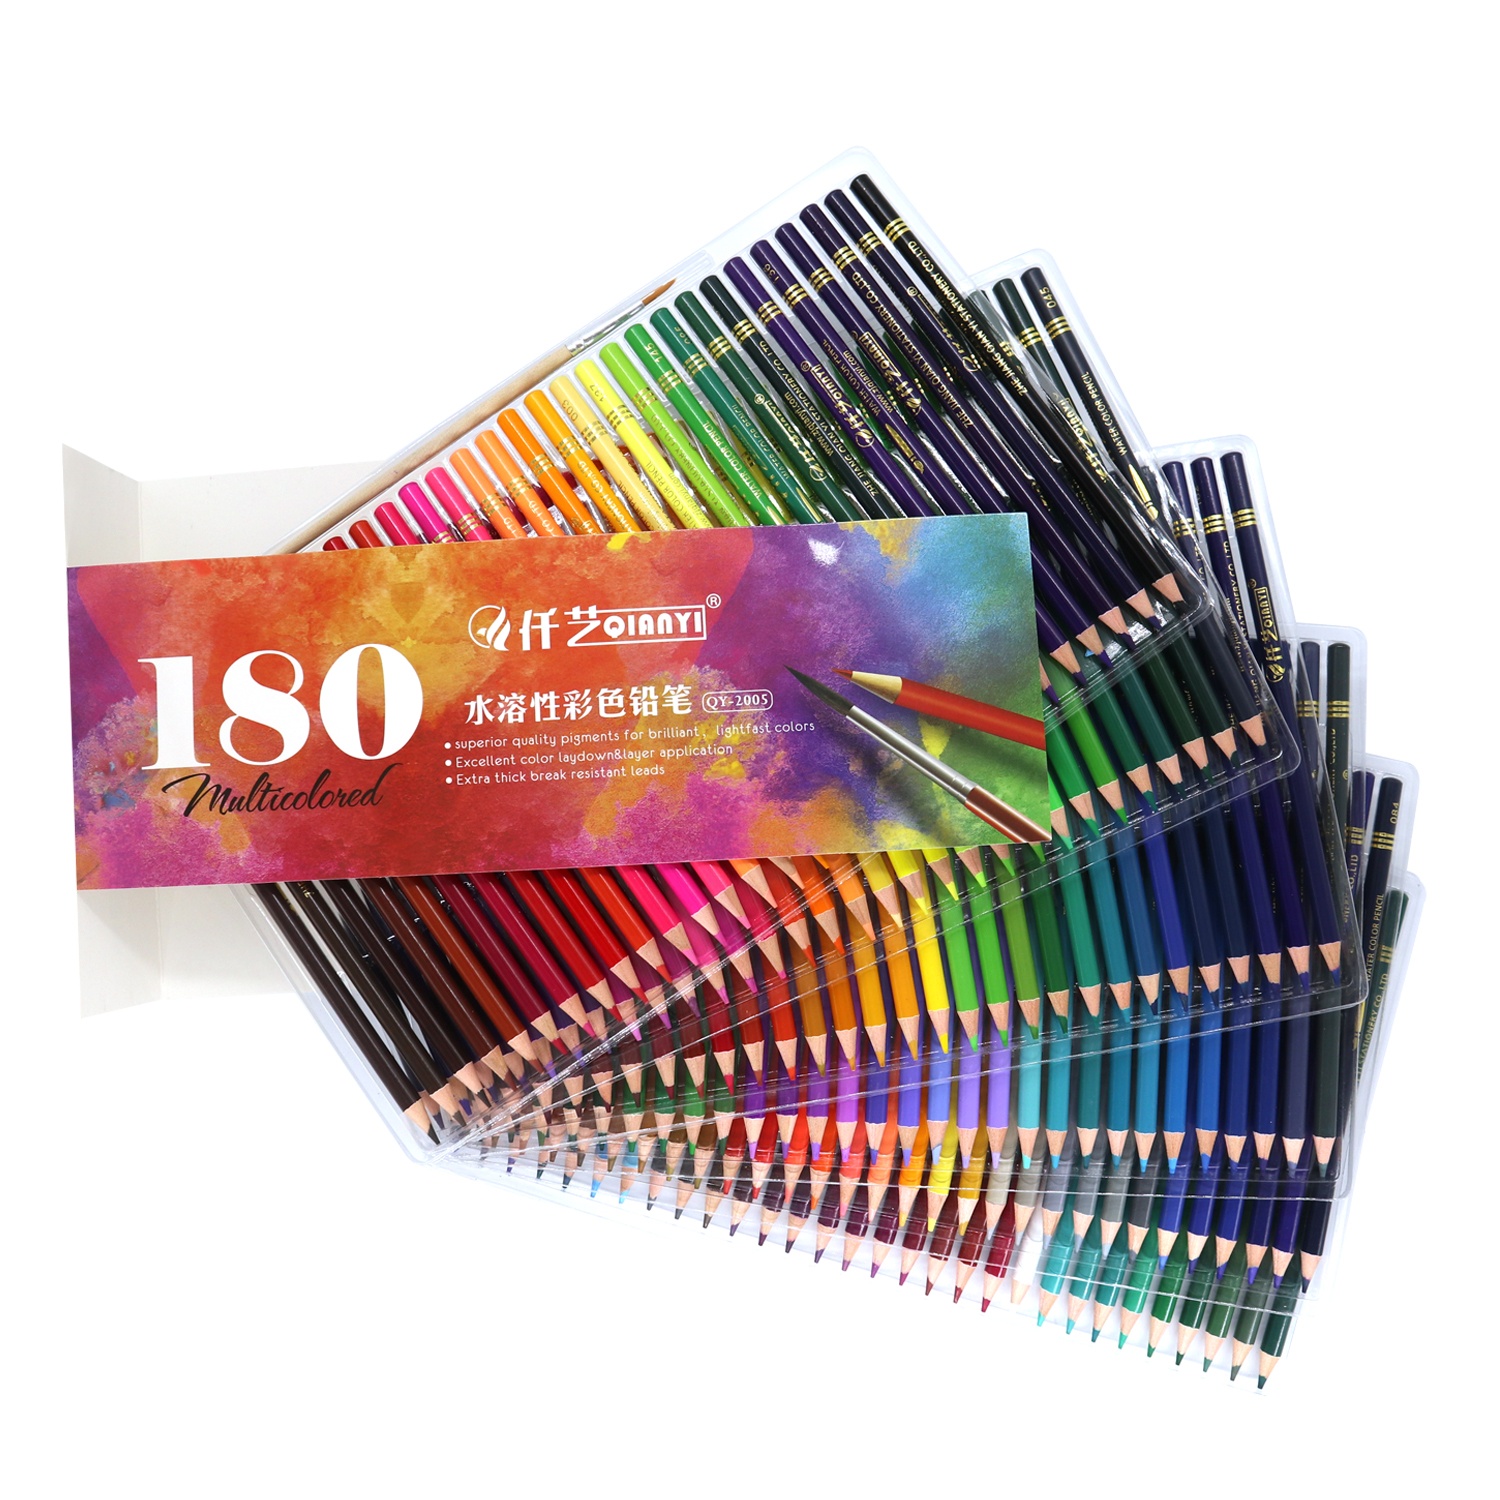 Großhandel 180 Farben Wasserlösliche Farbstifte farbig Bleistift Set Qualität für Kunstmalerei11